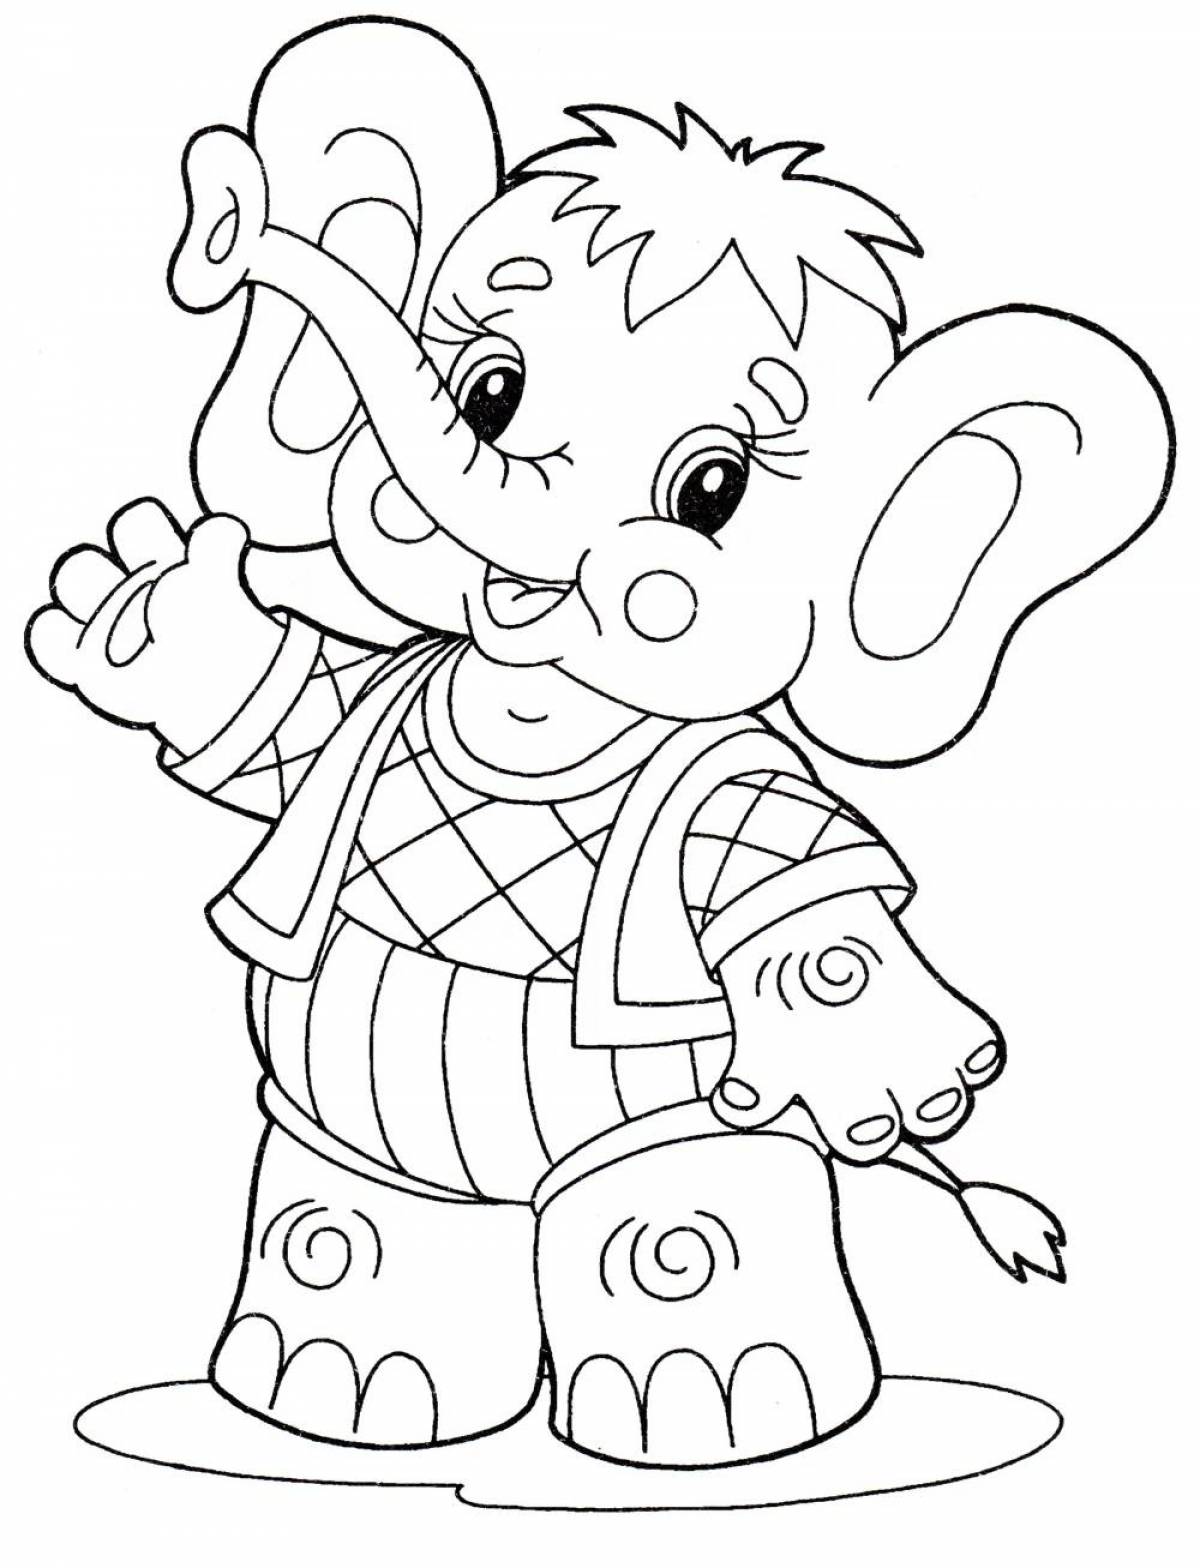 Раскраска экзотический слон для детей